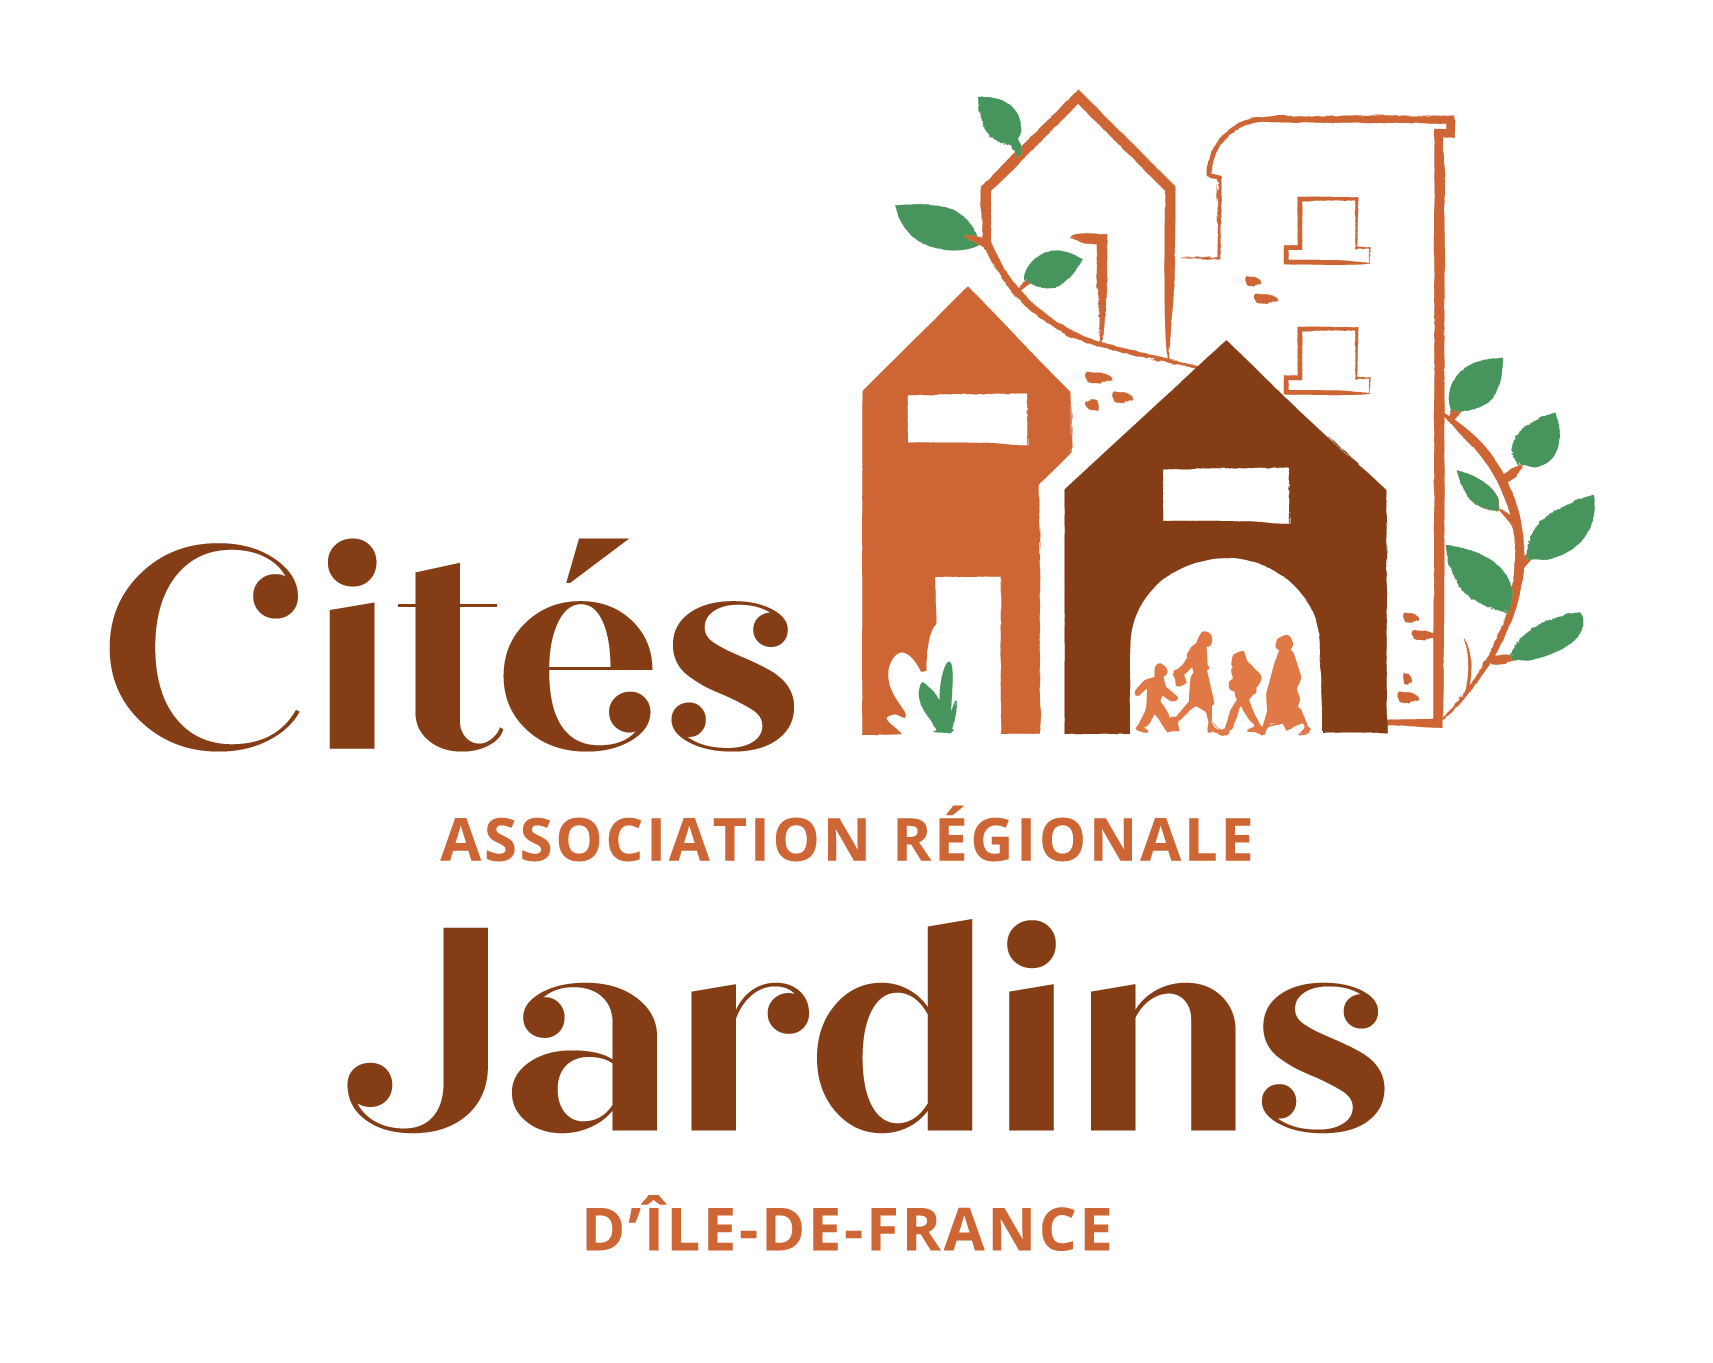 Association régionale des cités-jardins d'Ile-de-France